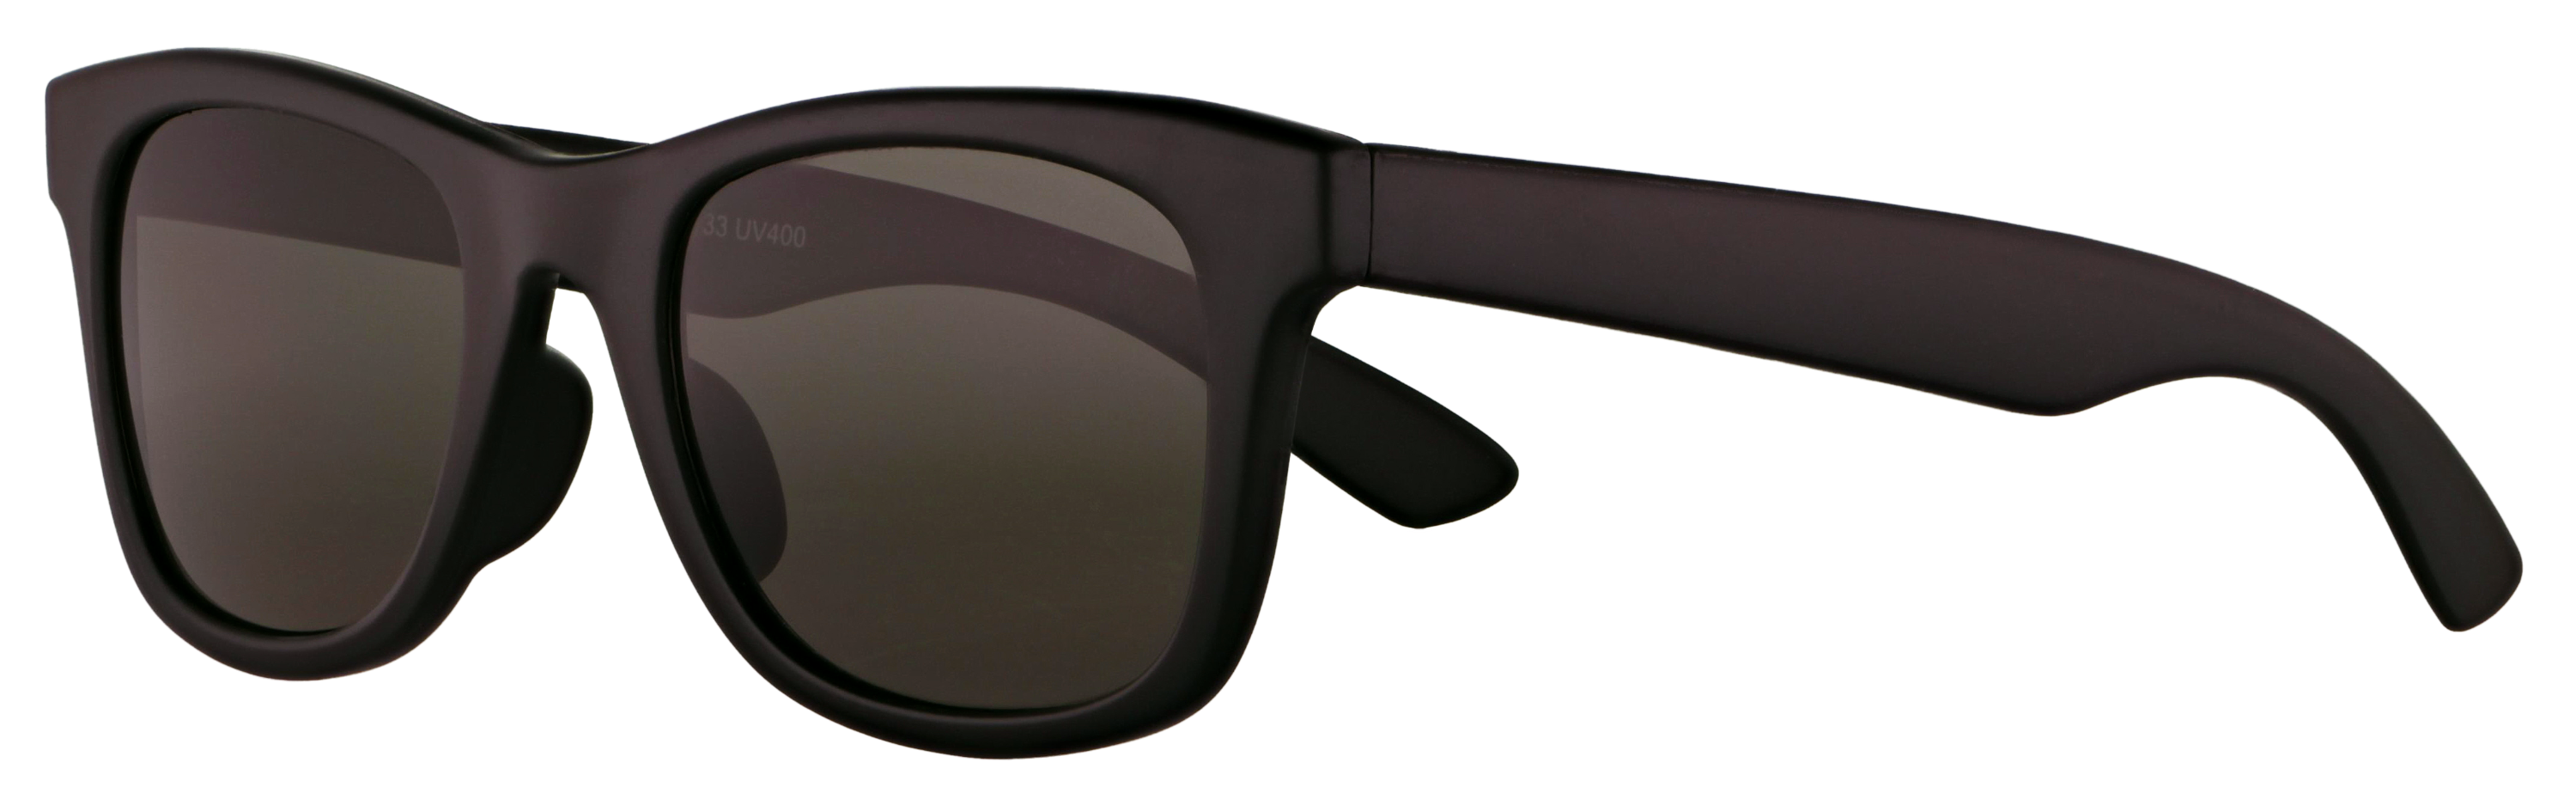 Das Bild zeigt die Sonnenbrille 718811 von der Marke Abele Optik in schwarz matt.